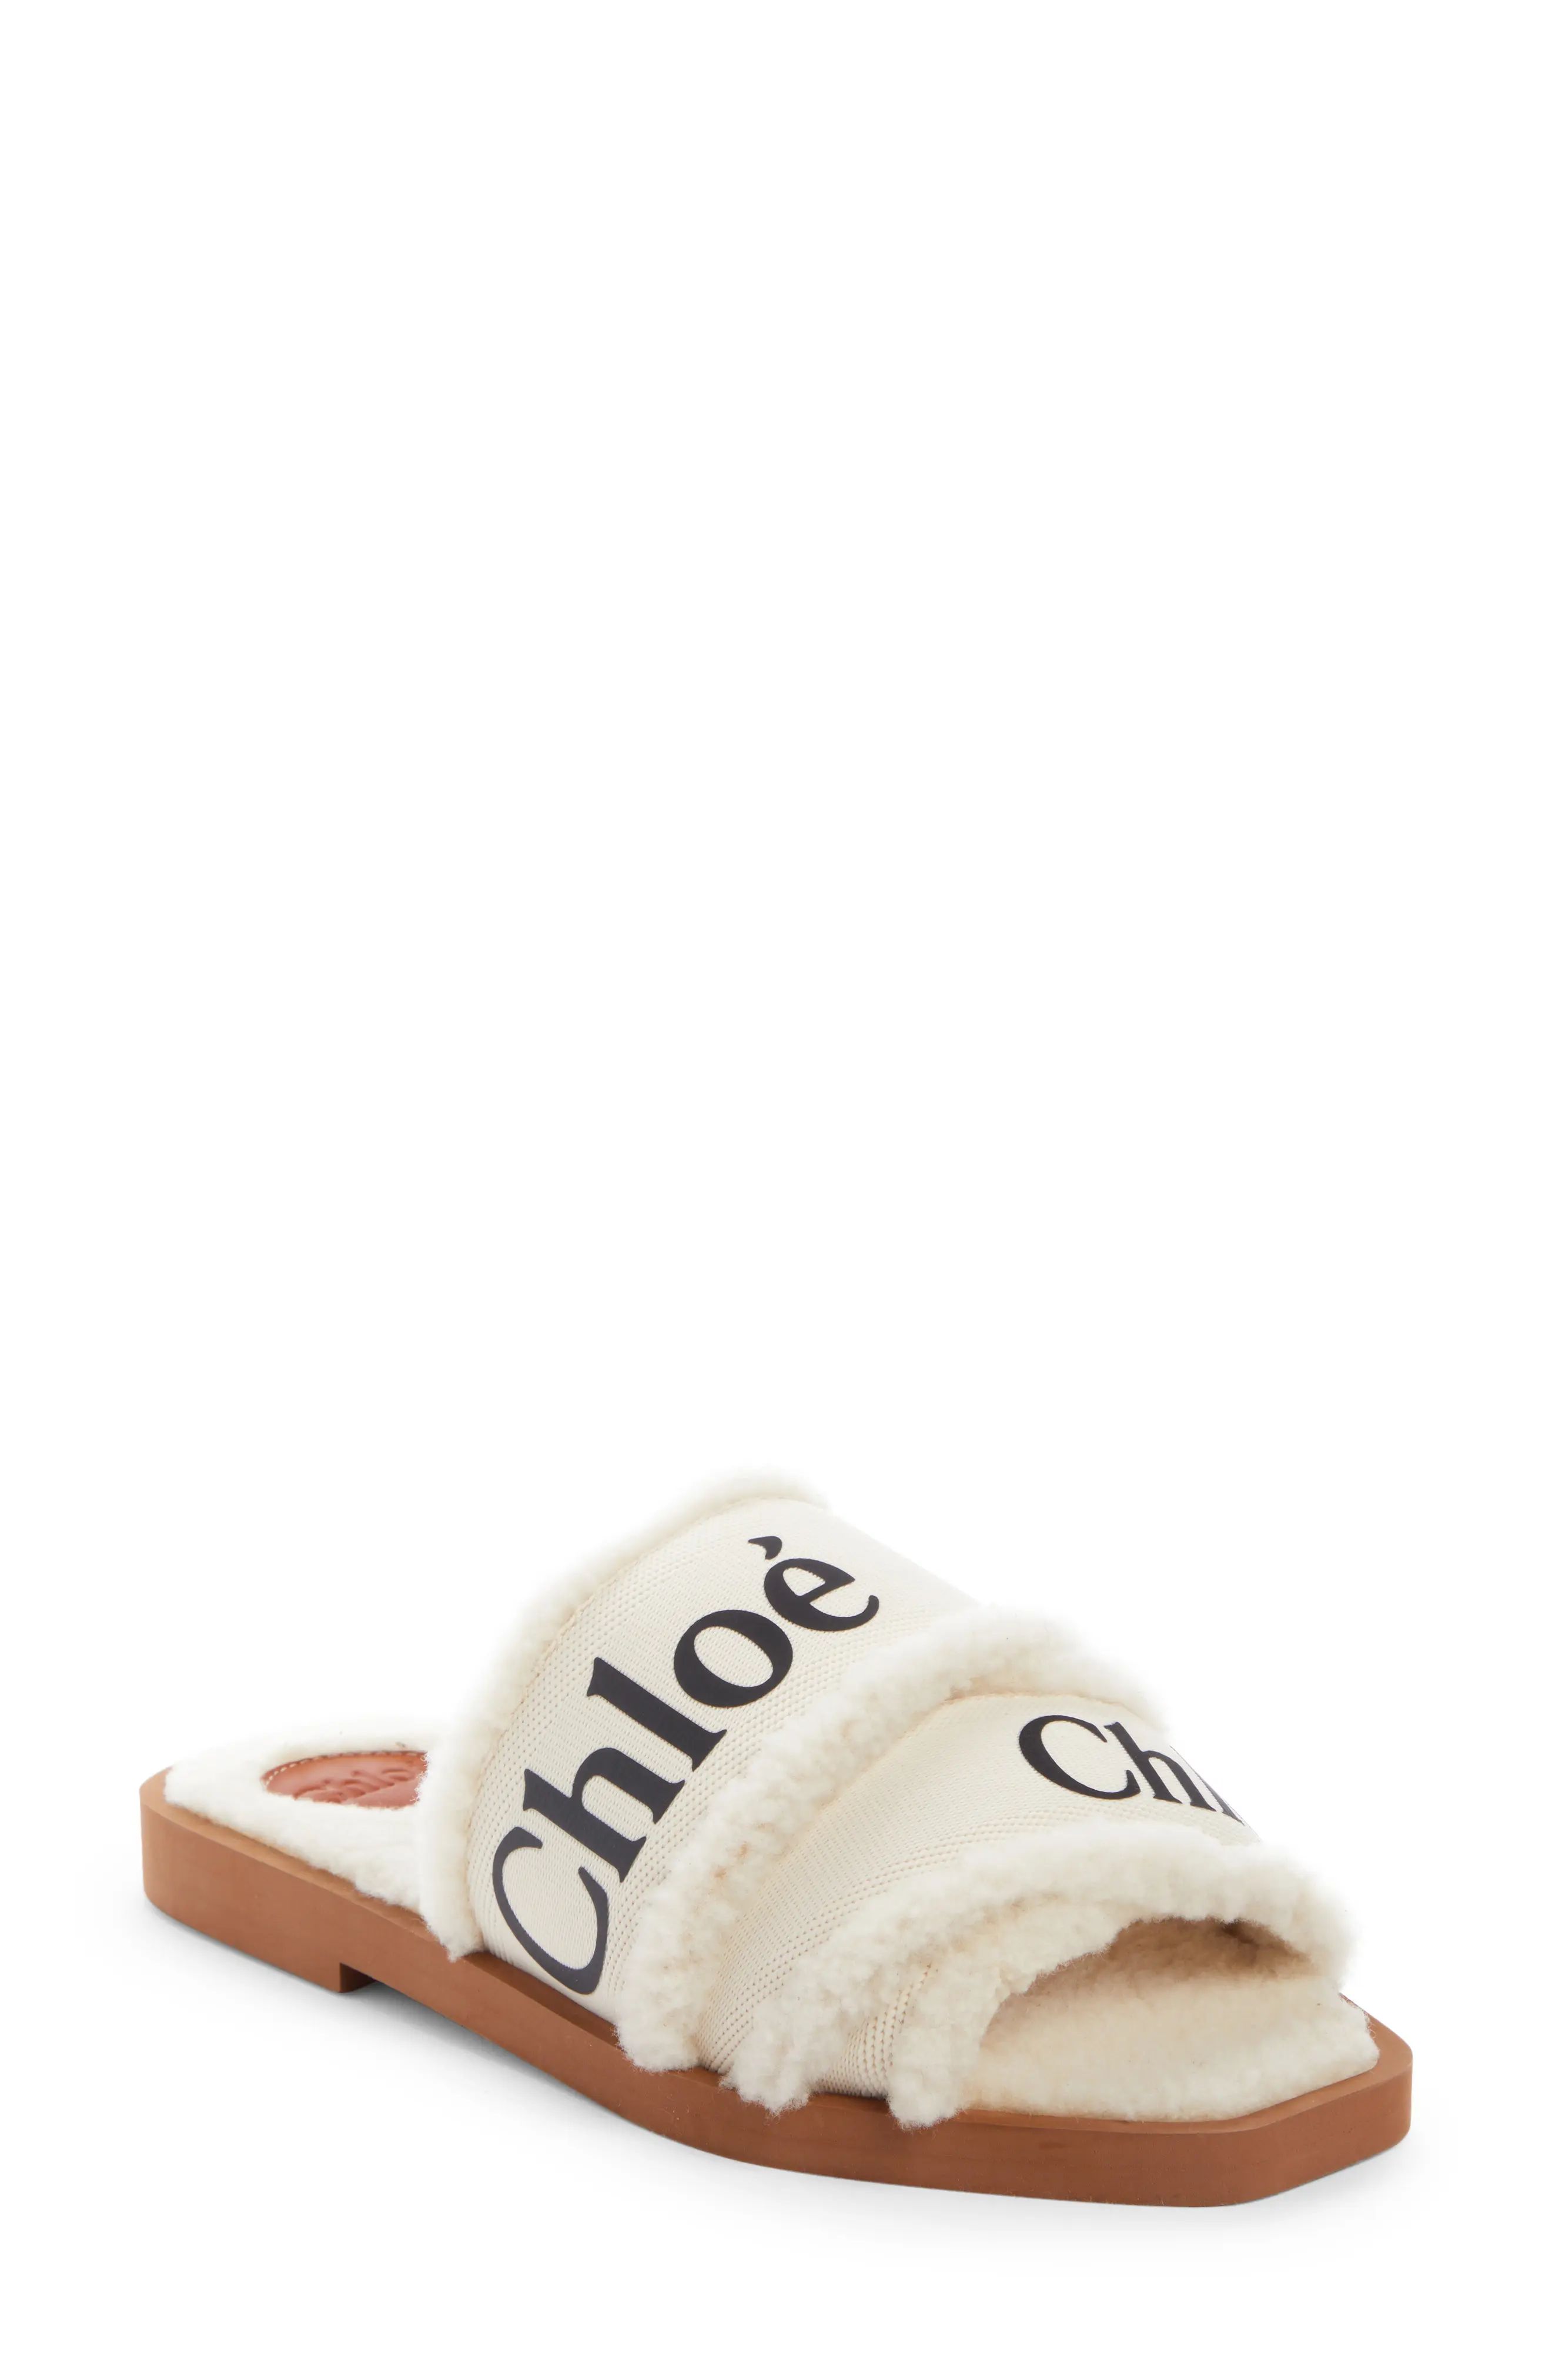 Women's Chloe Woody Genuine Shearling Slide Sandal, Size 11US - Brown | Nordstrom